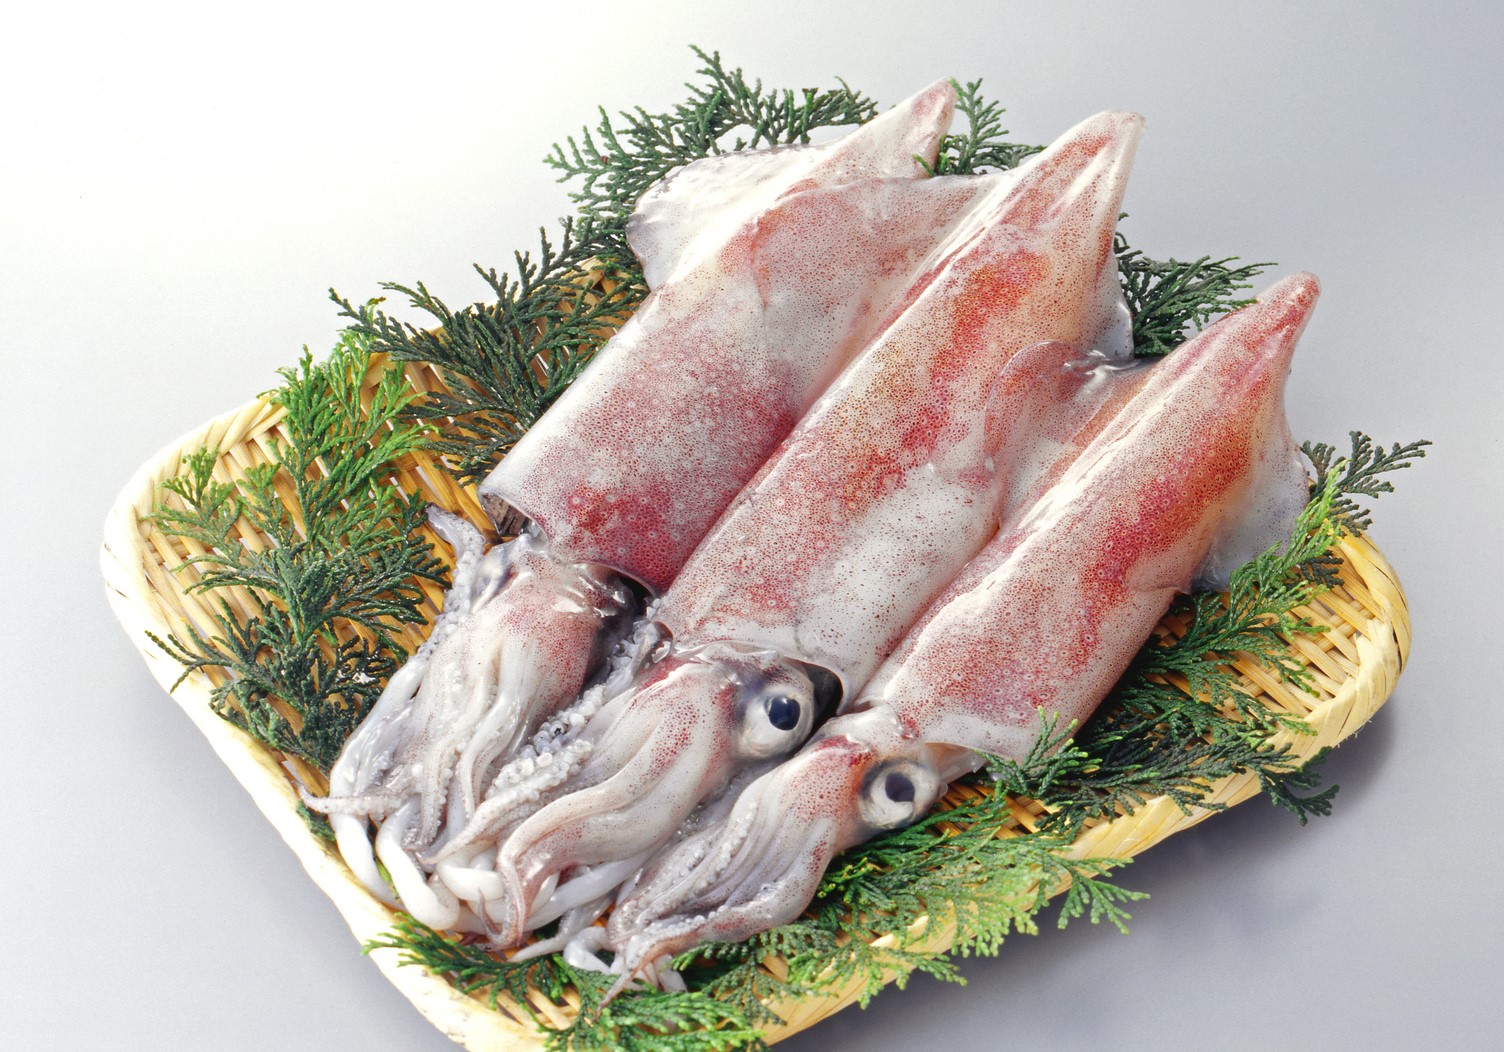 冷凍イカの美味しいレシピ イカをムダなく美味しく食べるコツ 急速冷凍 による高品質な業務用食材通販マーケット